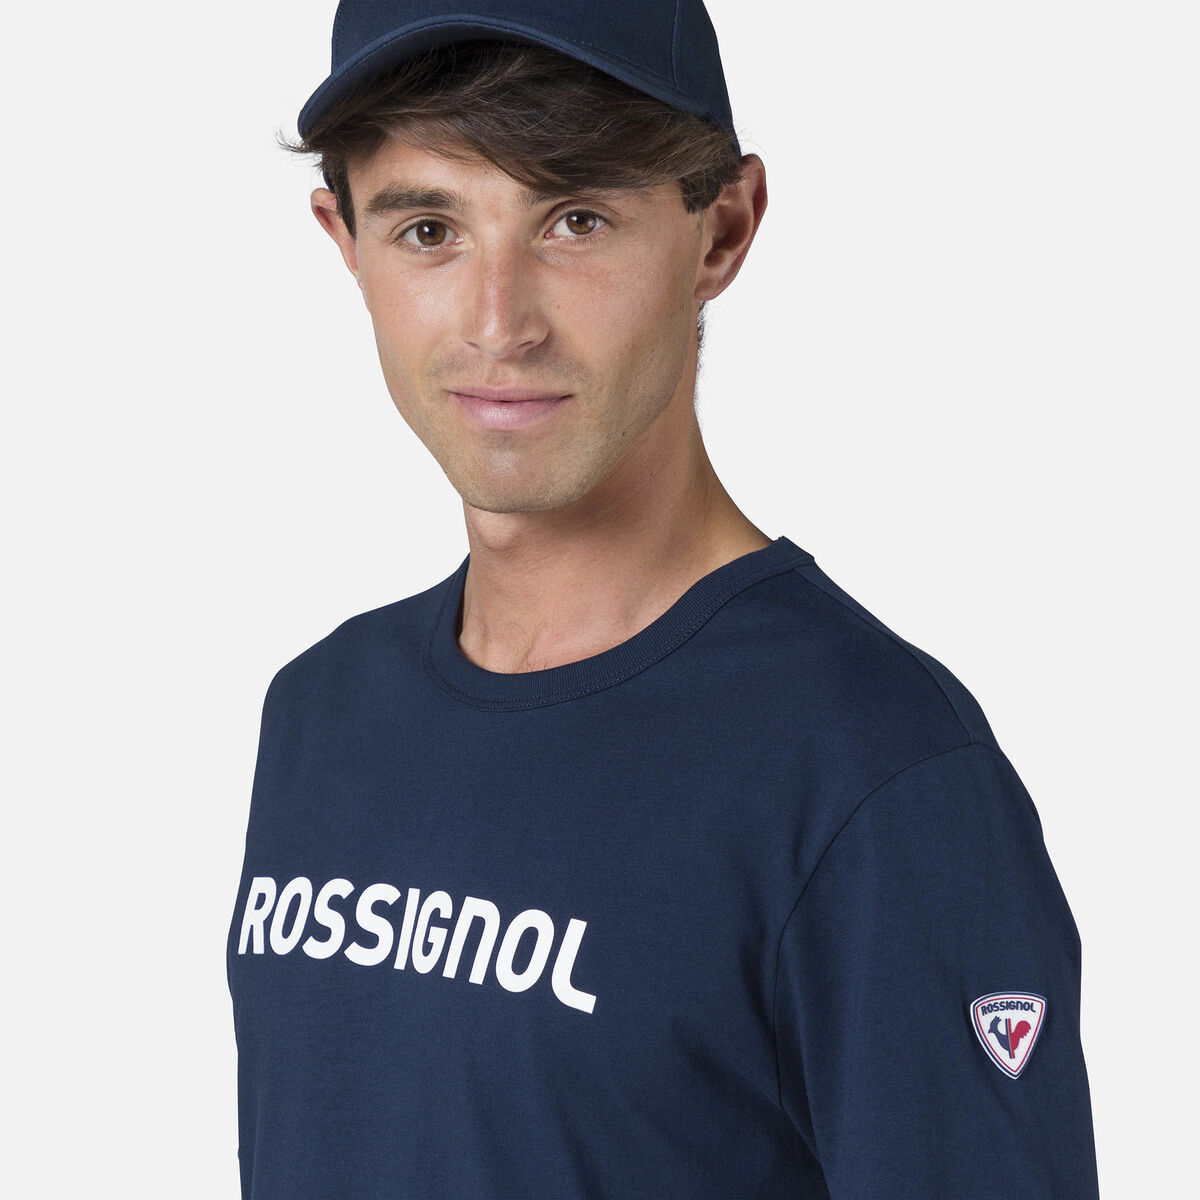 Camiseta Rossignol para hombre